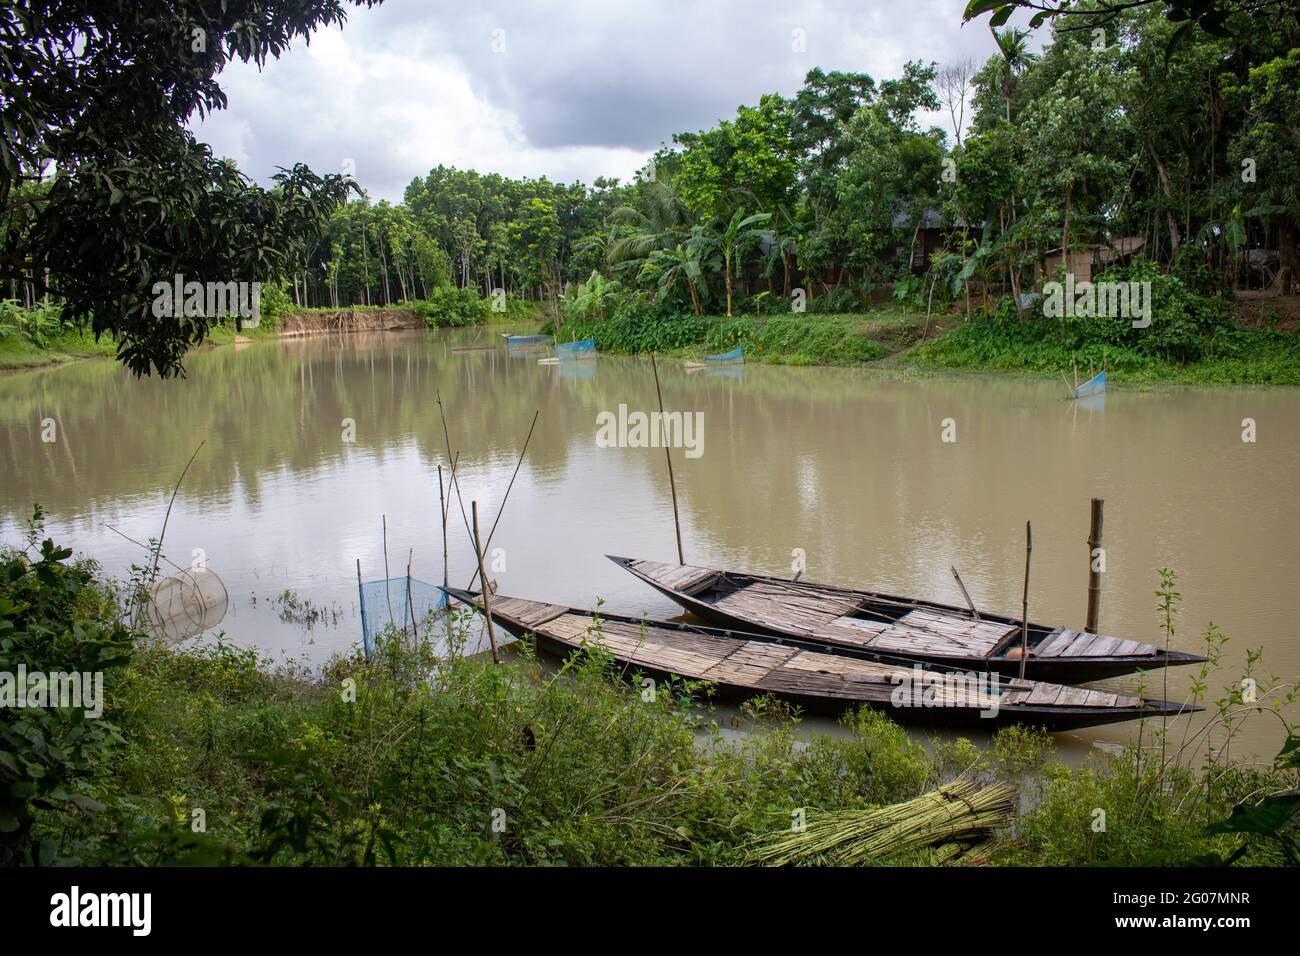 Il Bangladesh è un paese fluviale. Un piccolo fiume tranquillo e bello. Ci sono due barche legate al molo. Foto Stock